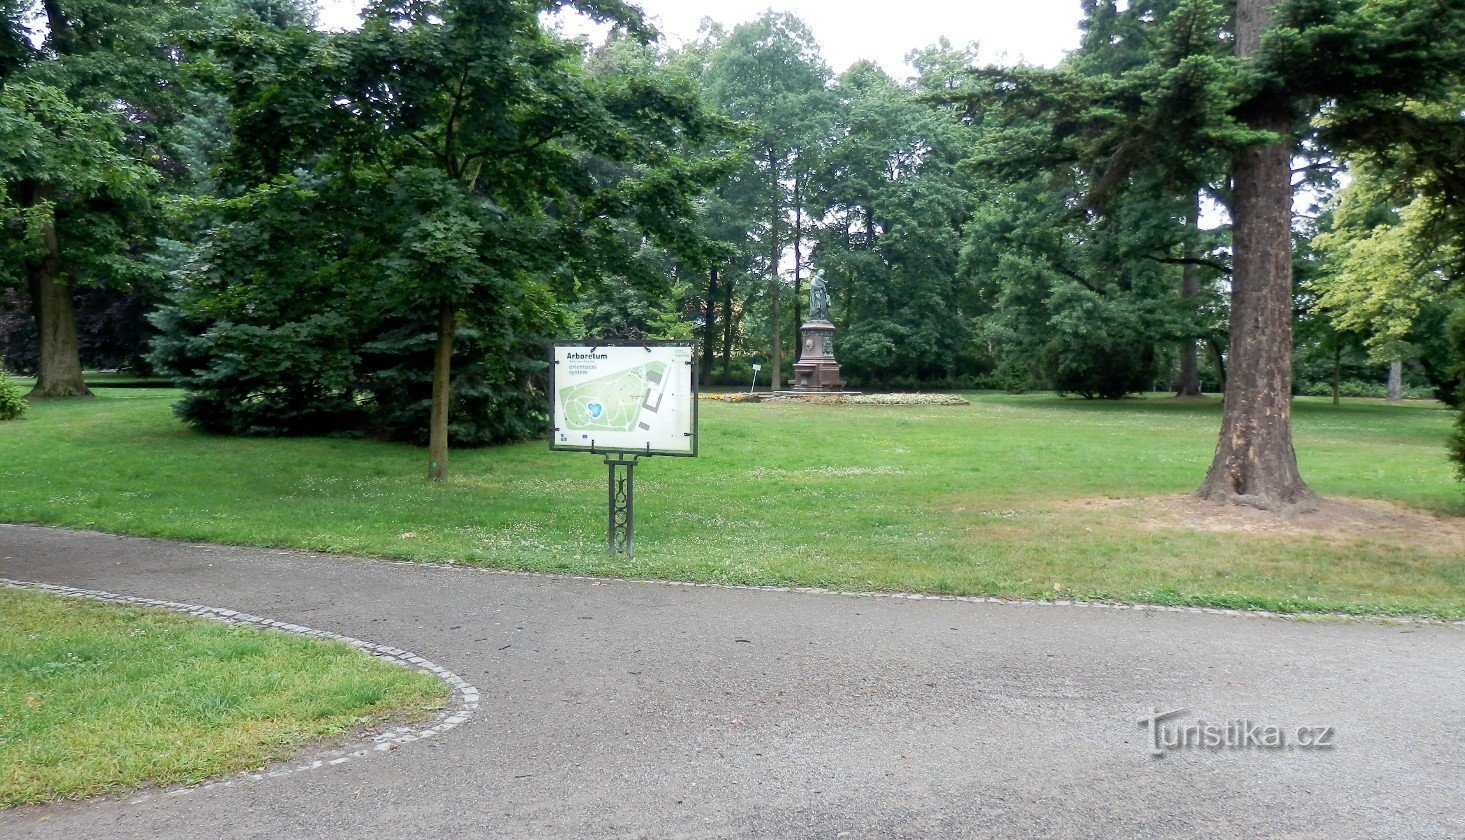 Panneau d'orientation avec la désignation des arbres et arbustes plantés, en arrière-plan la sculpture de Mateřsk